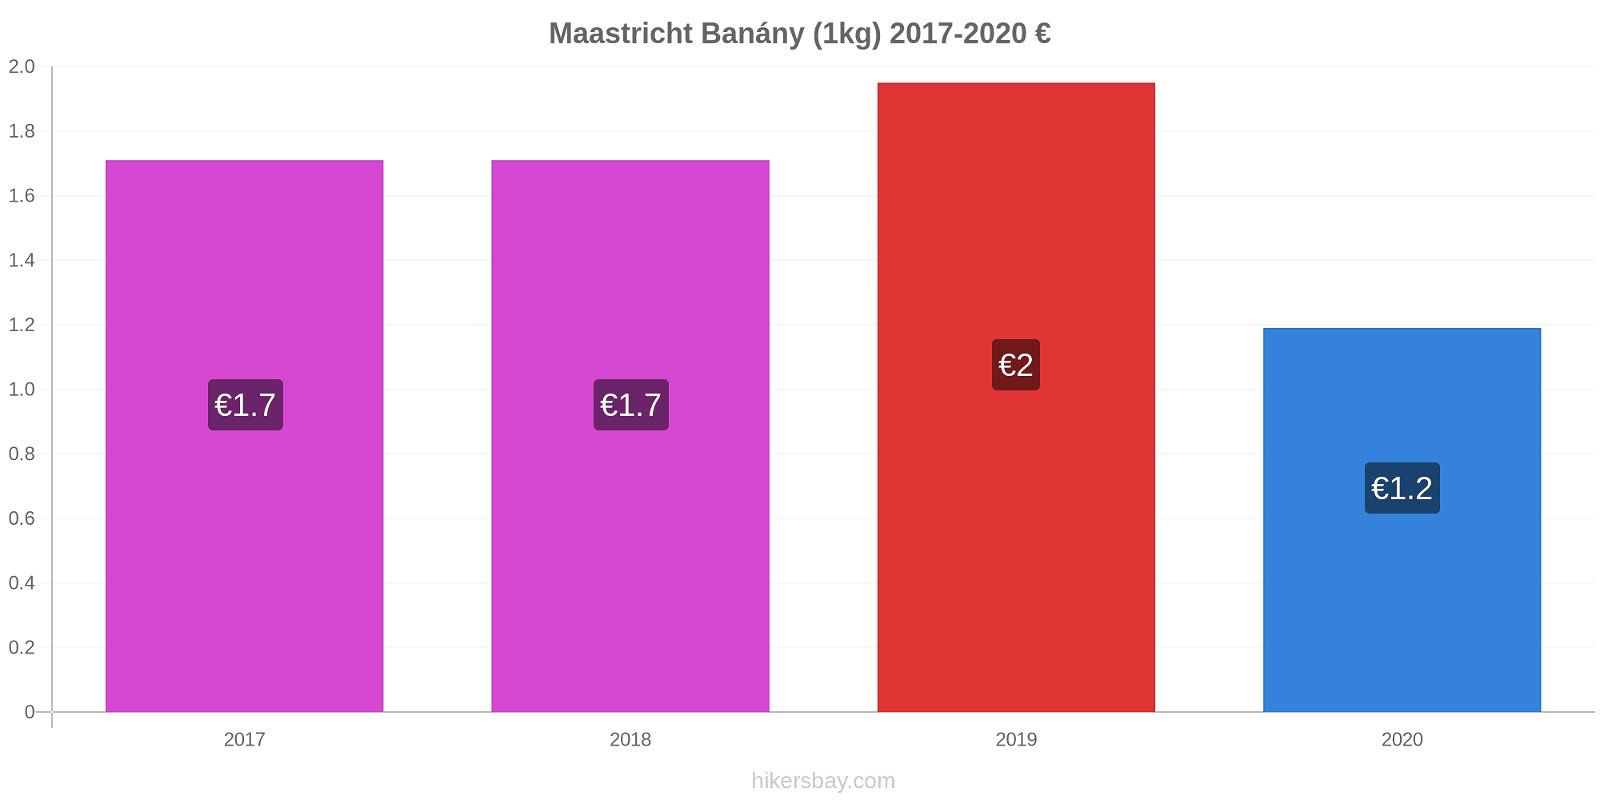 Maastricht změny cen Banány (1kg) hikersbay.com